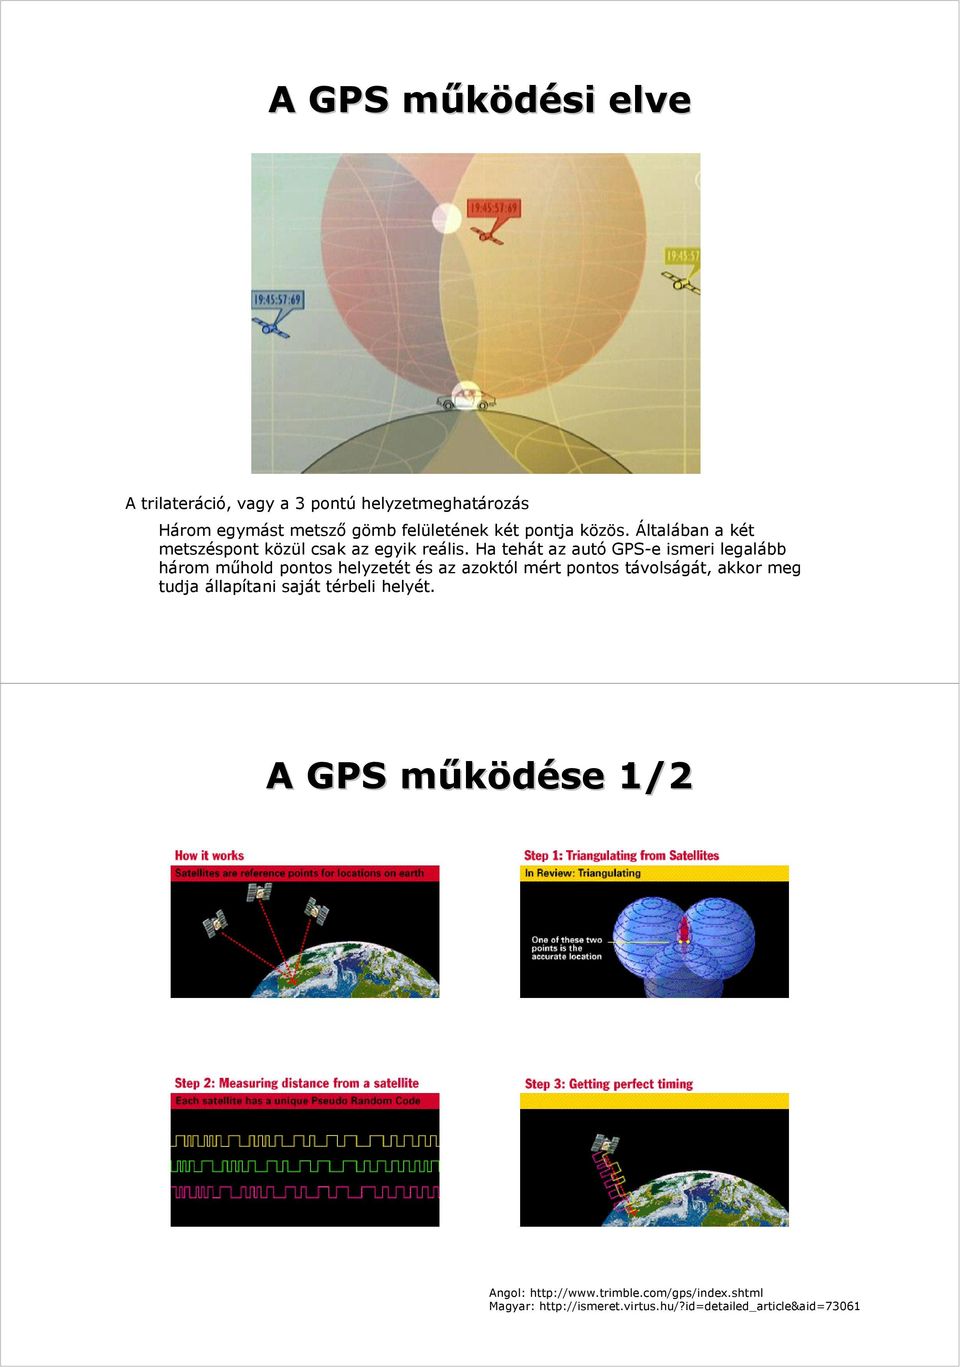 Ha tehát az autó GPS-e ismeri legalább három műhold pontos helyzetét és az azoktól mért pontos távolságát, akkor meg